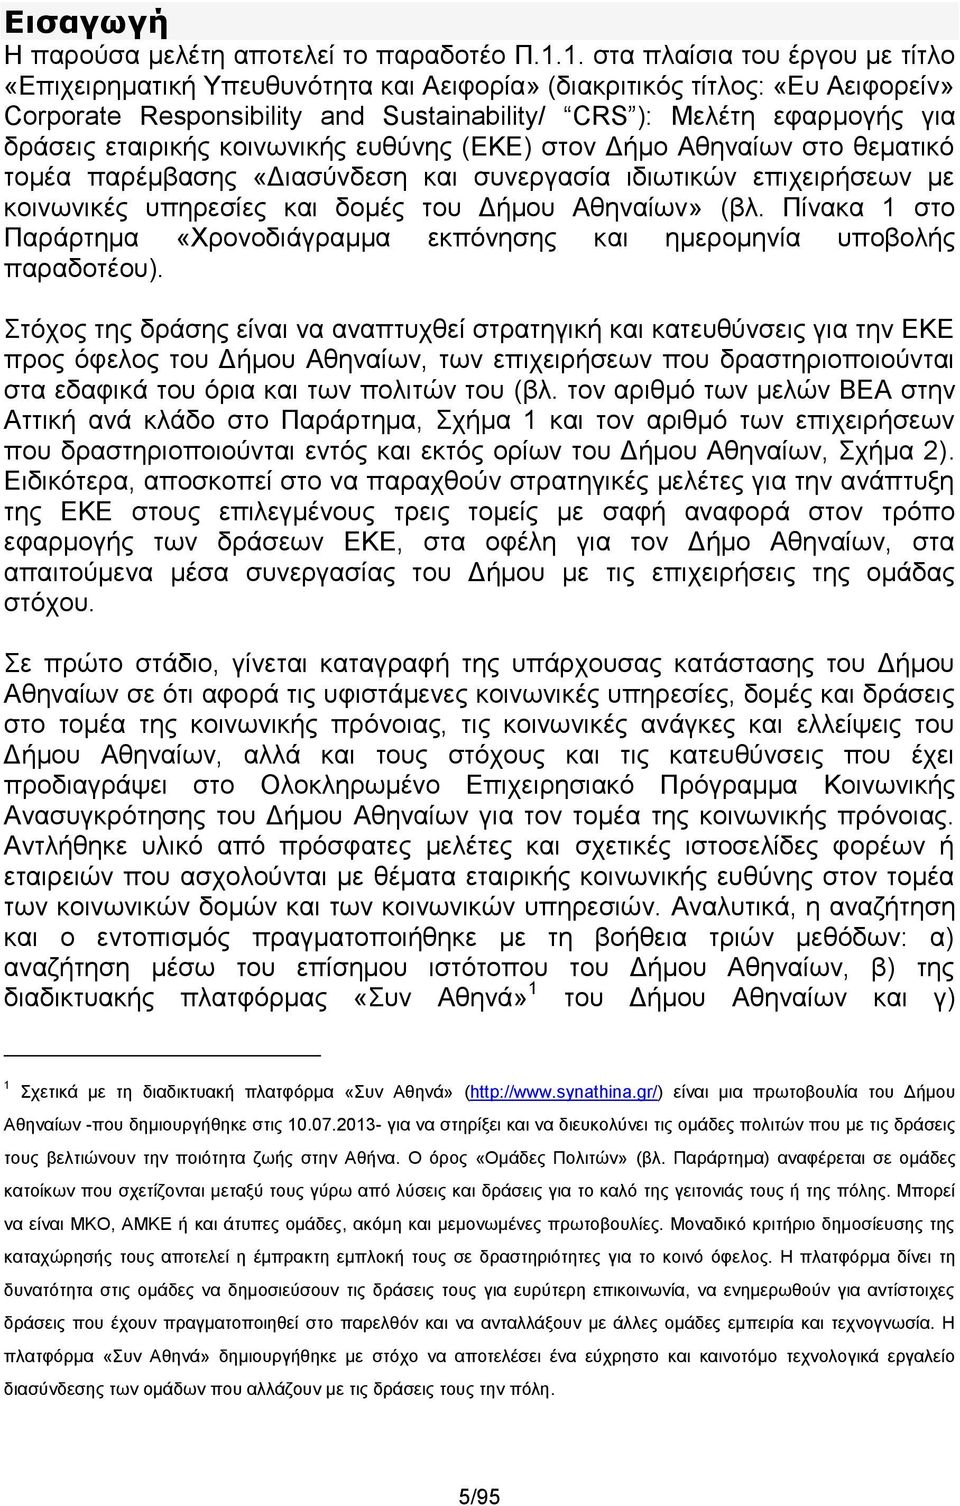 εταιρικής κοινωνικής ευθύνης (ΕΚΕ) στον Δήμο Αθηναίων στο θεματικό τομέα παρέμβασης «Διασύνδεση και συνεργασία ιδιωτικών επιχειρήσεων με κοινωνικές υπηρεσίες και δομές του Δήμου Αθηναίων» (βλ.